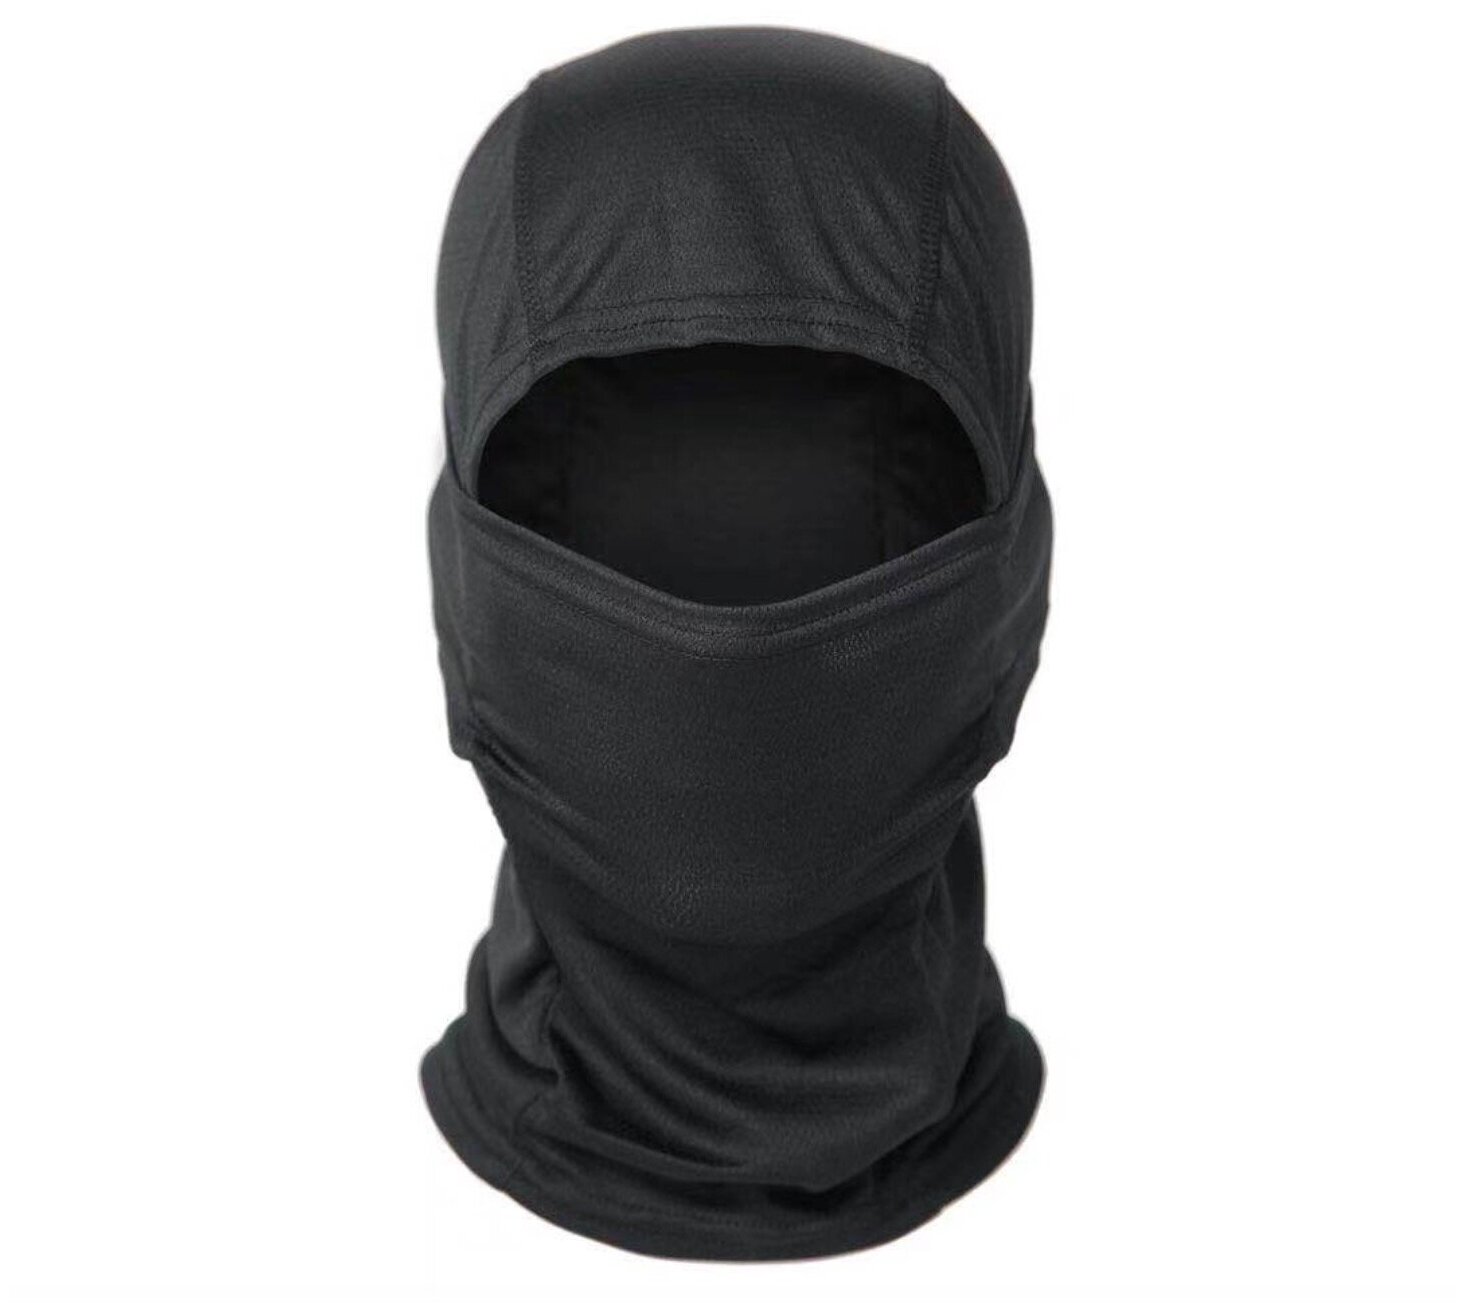 Тактическая черная маска балаклава бафф для головы/лица MyPads M-232105, головной убор под шлем, каску, ветрозащитная, солнцезащитная, пылезащитная.